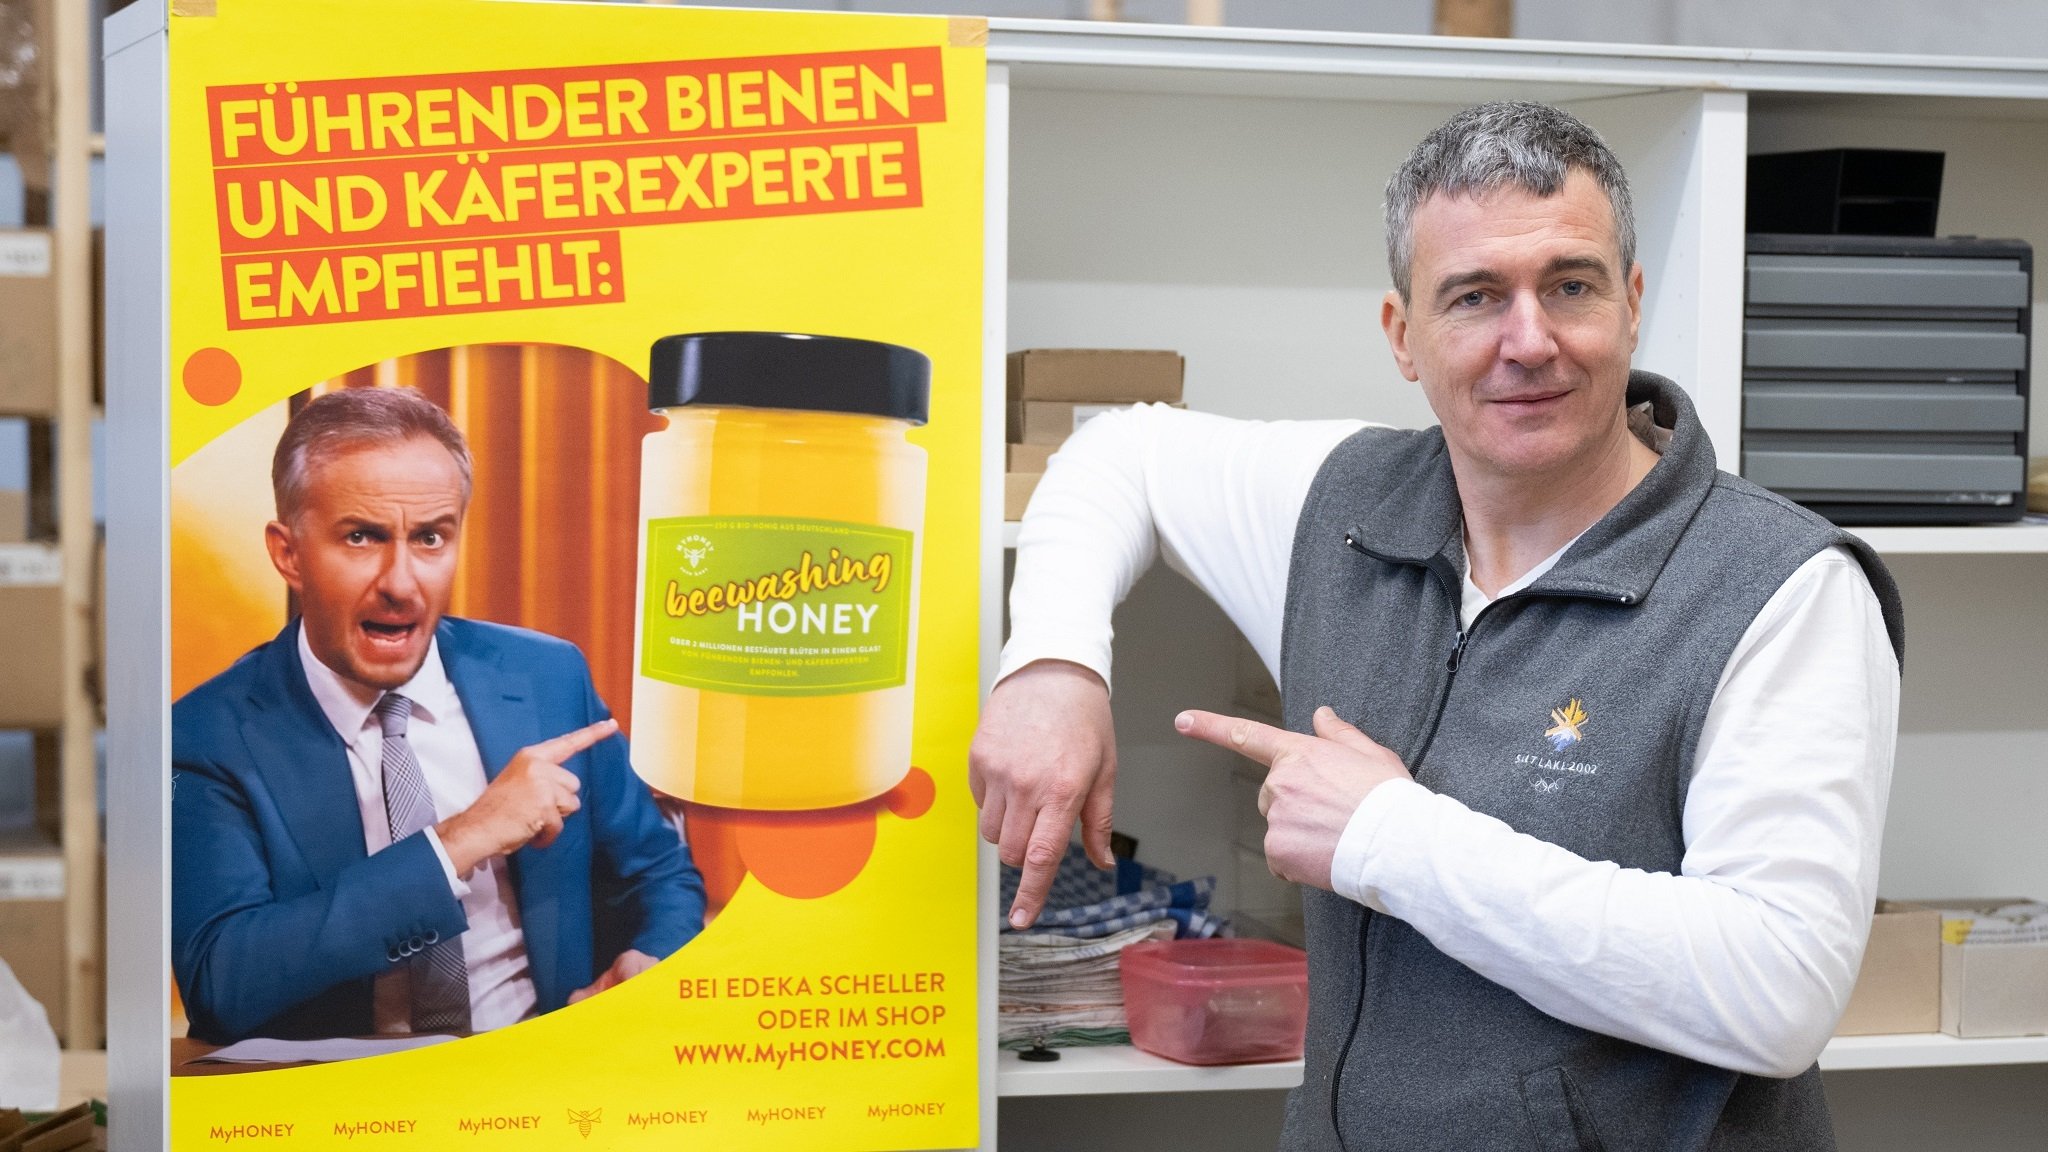 Eine satirische Werbung: Böhmermann als "führender Bienen- und Käferexperte"